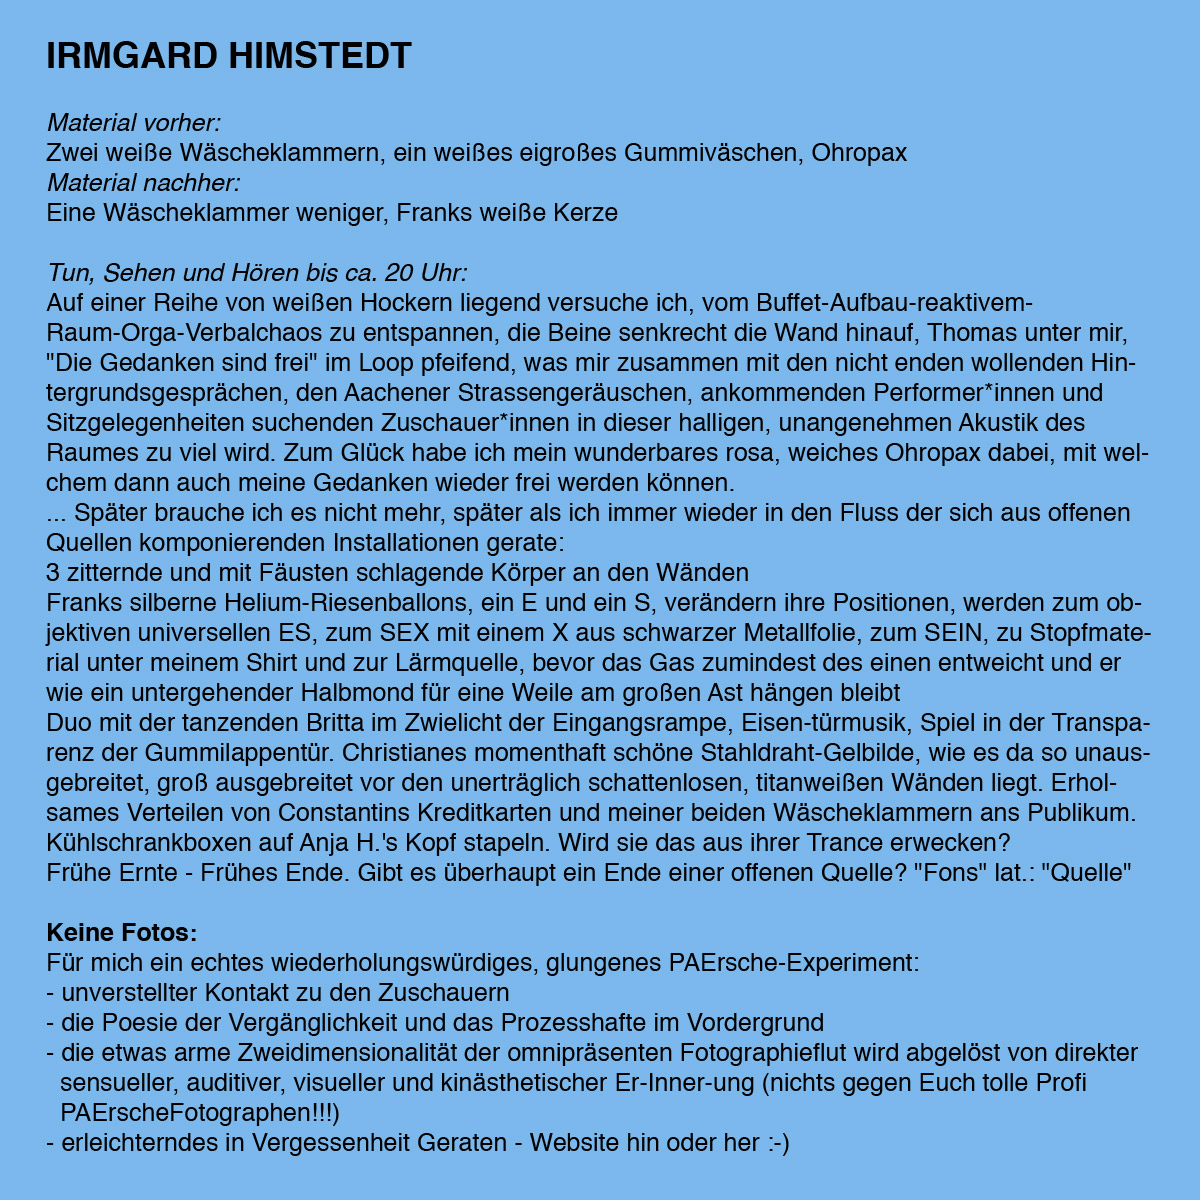 IrmgardHimstedt